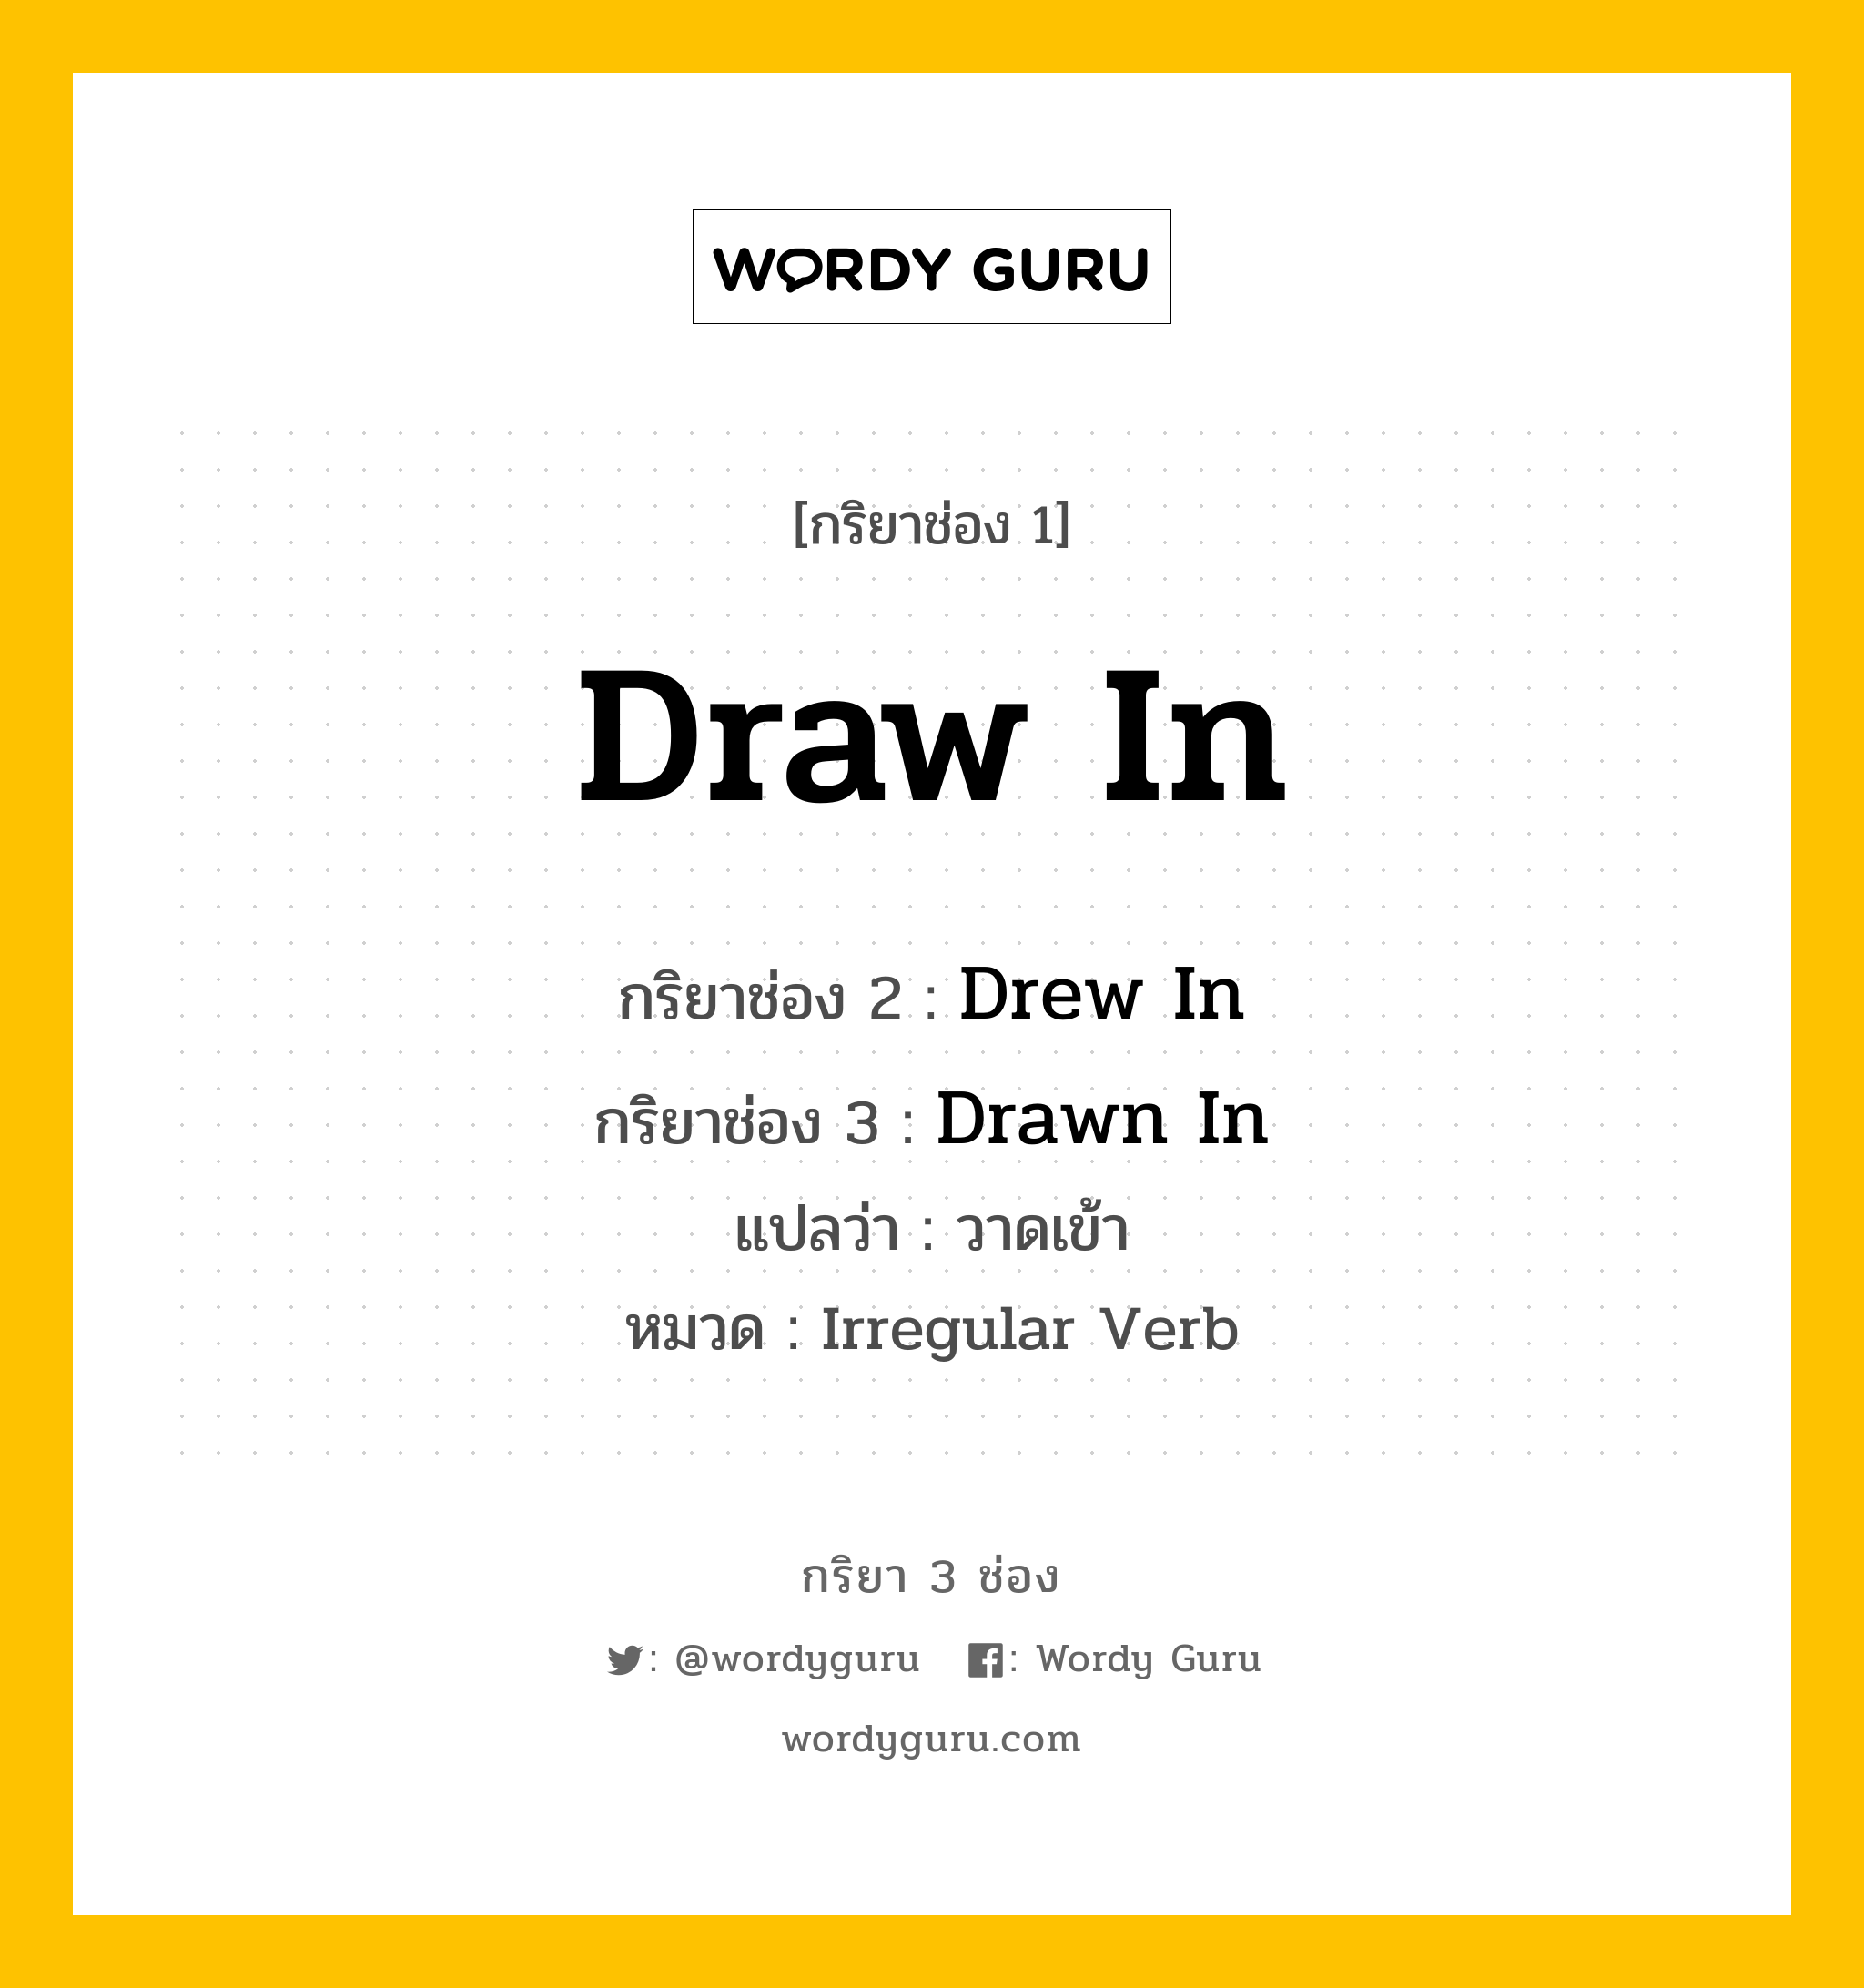 Draw In มีกริยา 3 ช่องอะไรบ้าง? คำศัพท์ในกลุ่มประเภท Irregular Verb, กริยาช่อง 1 Draw In กริยาช่อง 2 Drew In กริยาช่อง 3 Drawn In แปลว่า วาดเข้า หมวด Irregular Verb หมวด Irregular Verb